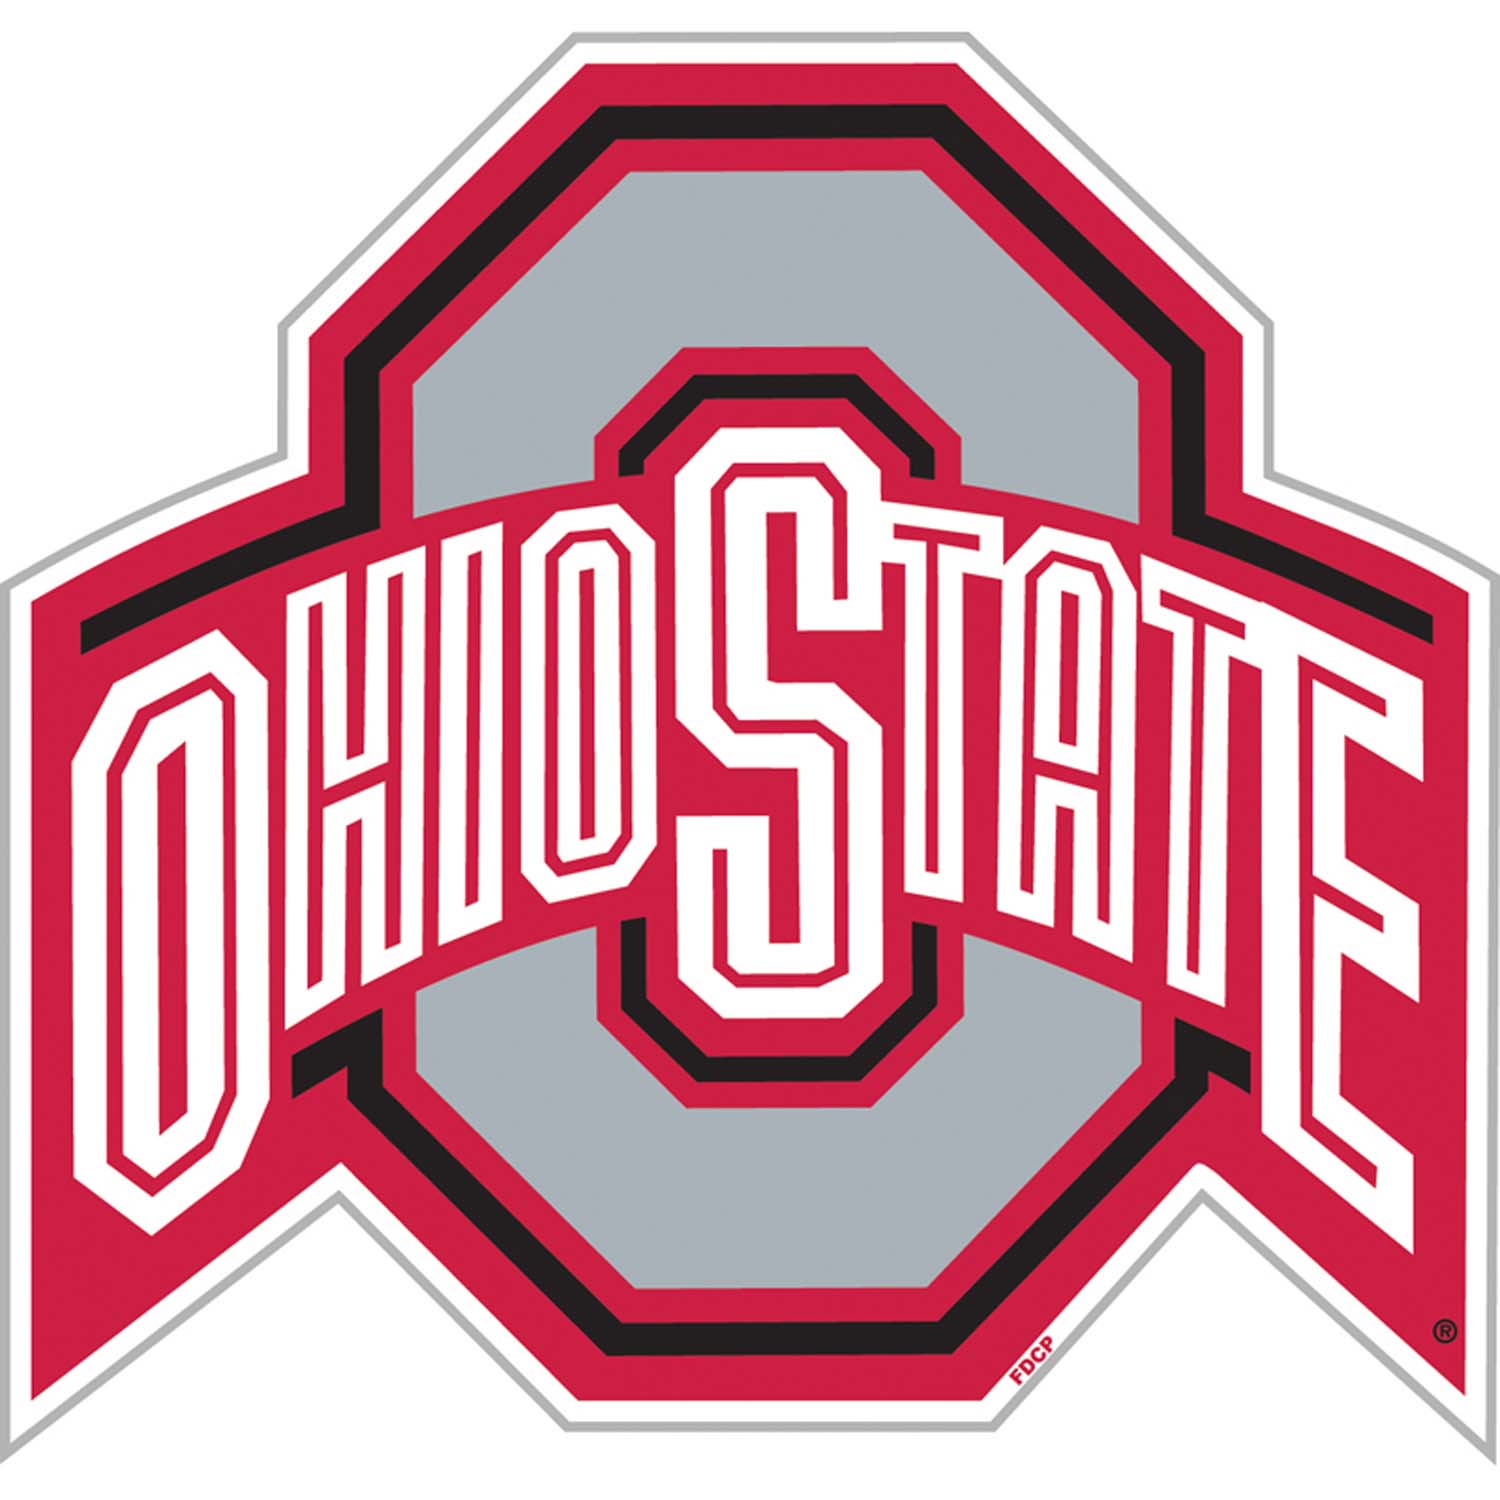 Best Photos of Ohio State Emblem - Ohio State University Buckeyes ...